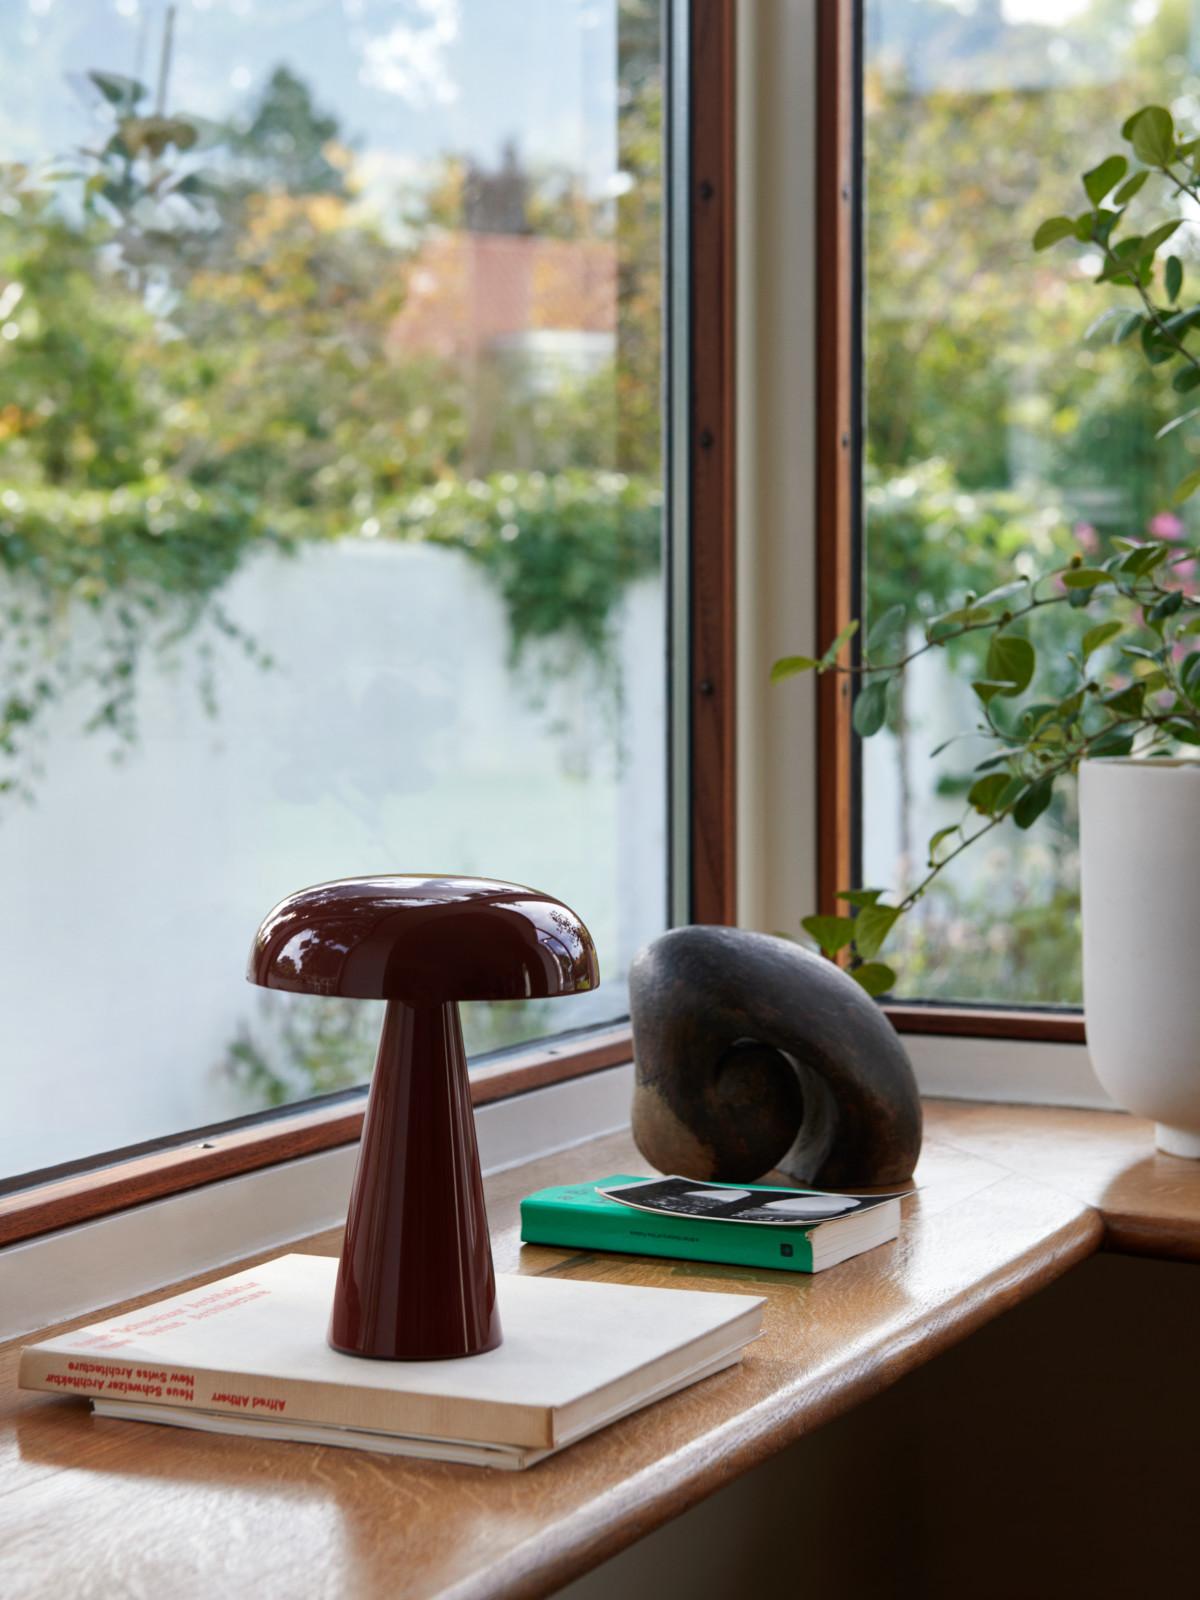 Adaptez l'éclairage à votre humeur avec Como SC53, une lampe de table portable de Space Copenhagen. 
Fabriquée en aluminium anodisé, la base robuste de Como se rétrécit vers un abat-jour en forme de champignon aux courbes douces. 
Cette lampe